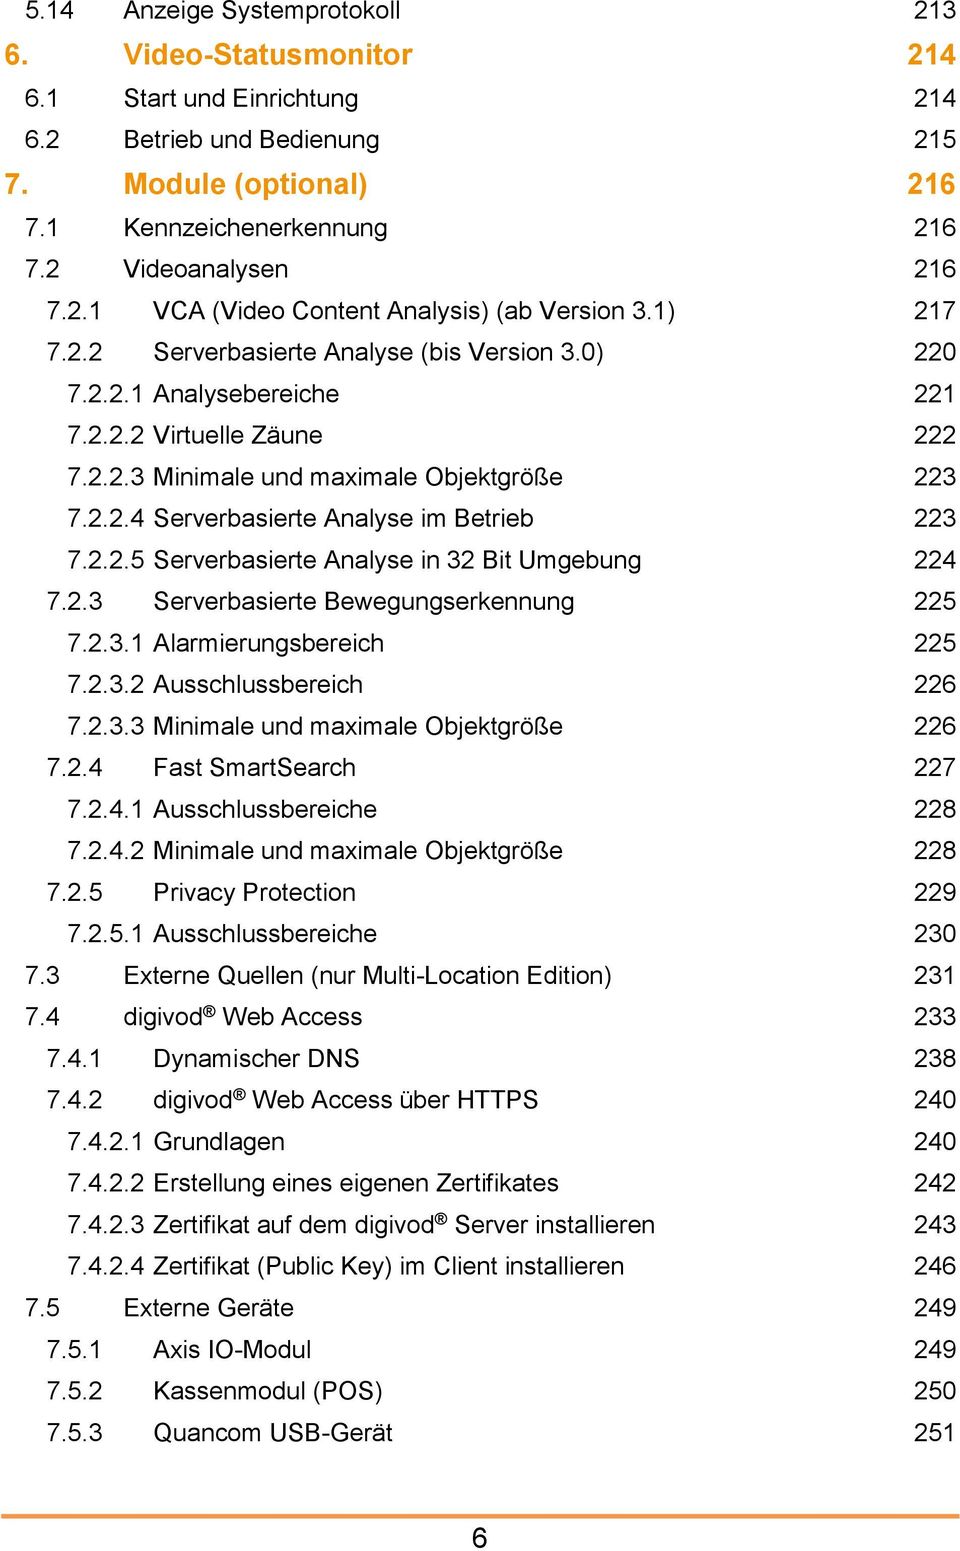 2.2.5 Serverbasierte Analyse in 32 Bit Umgebung 224 7.2.3 Serverbasierte Bewegungserkennung 225 7.2.3.1 Alarmierungsbereich 225 7.2.3.2 Ausschlussbereich 226 7.2.3.3 Minimale und maximale Objektgröße 226 7.